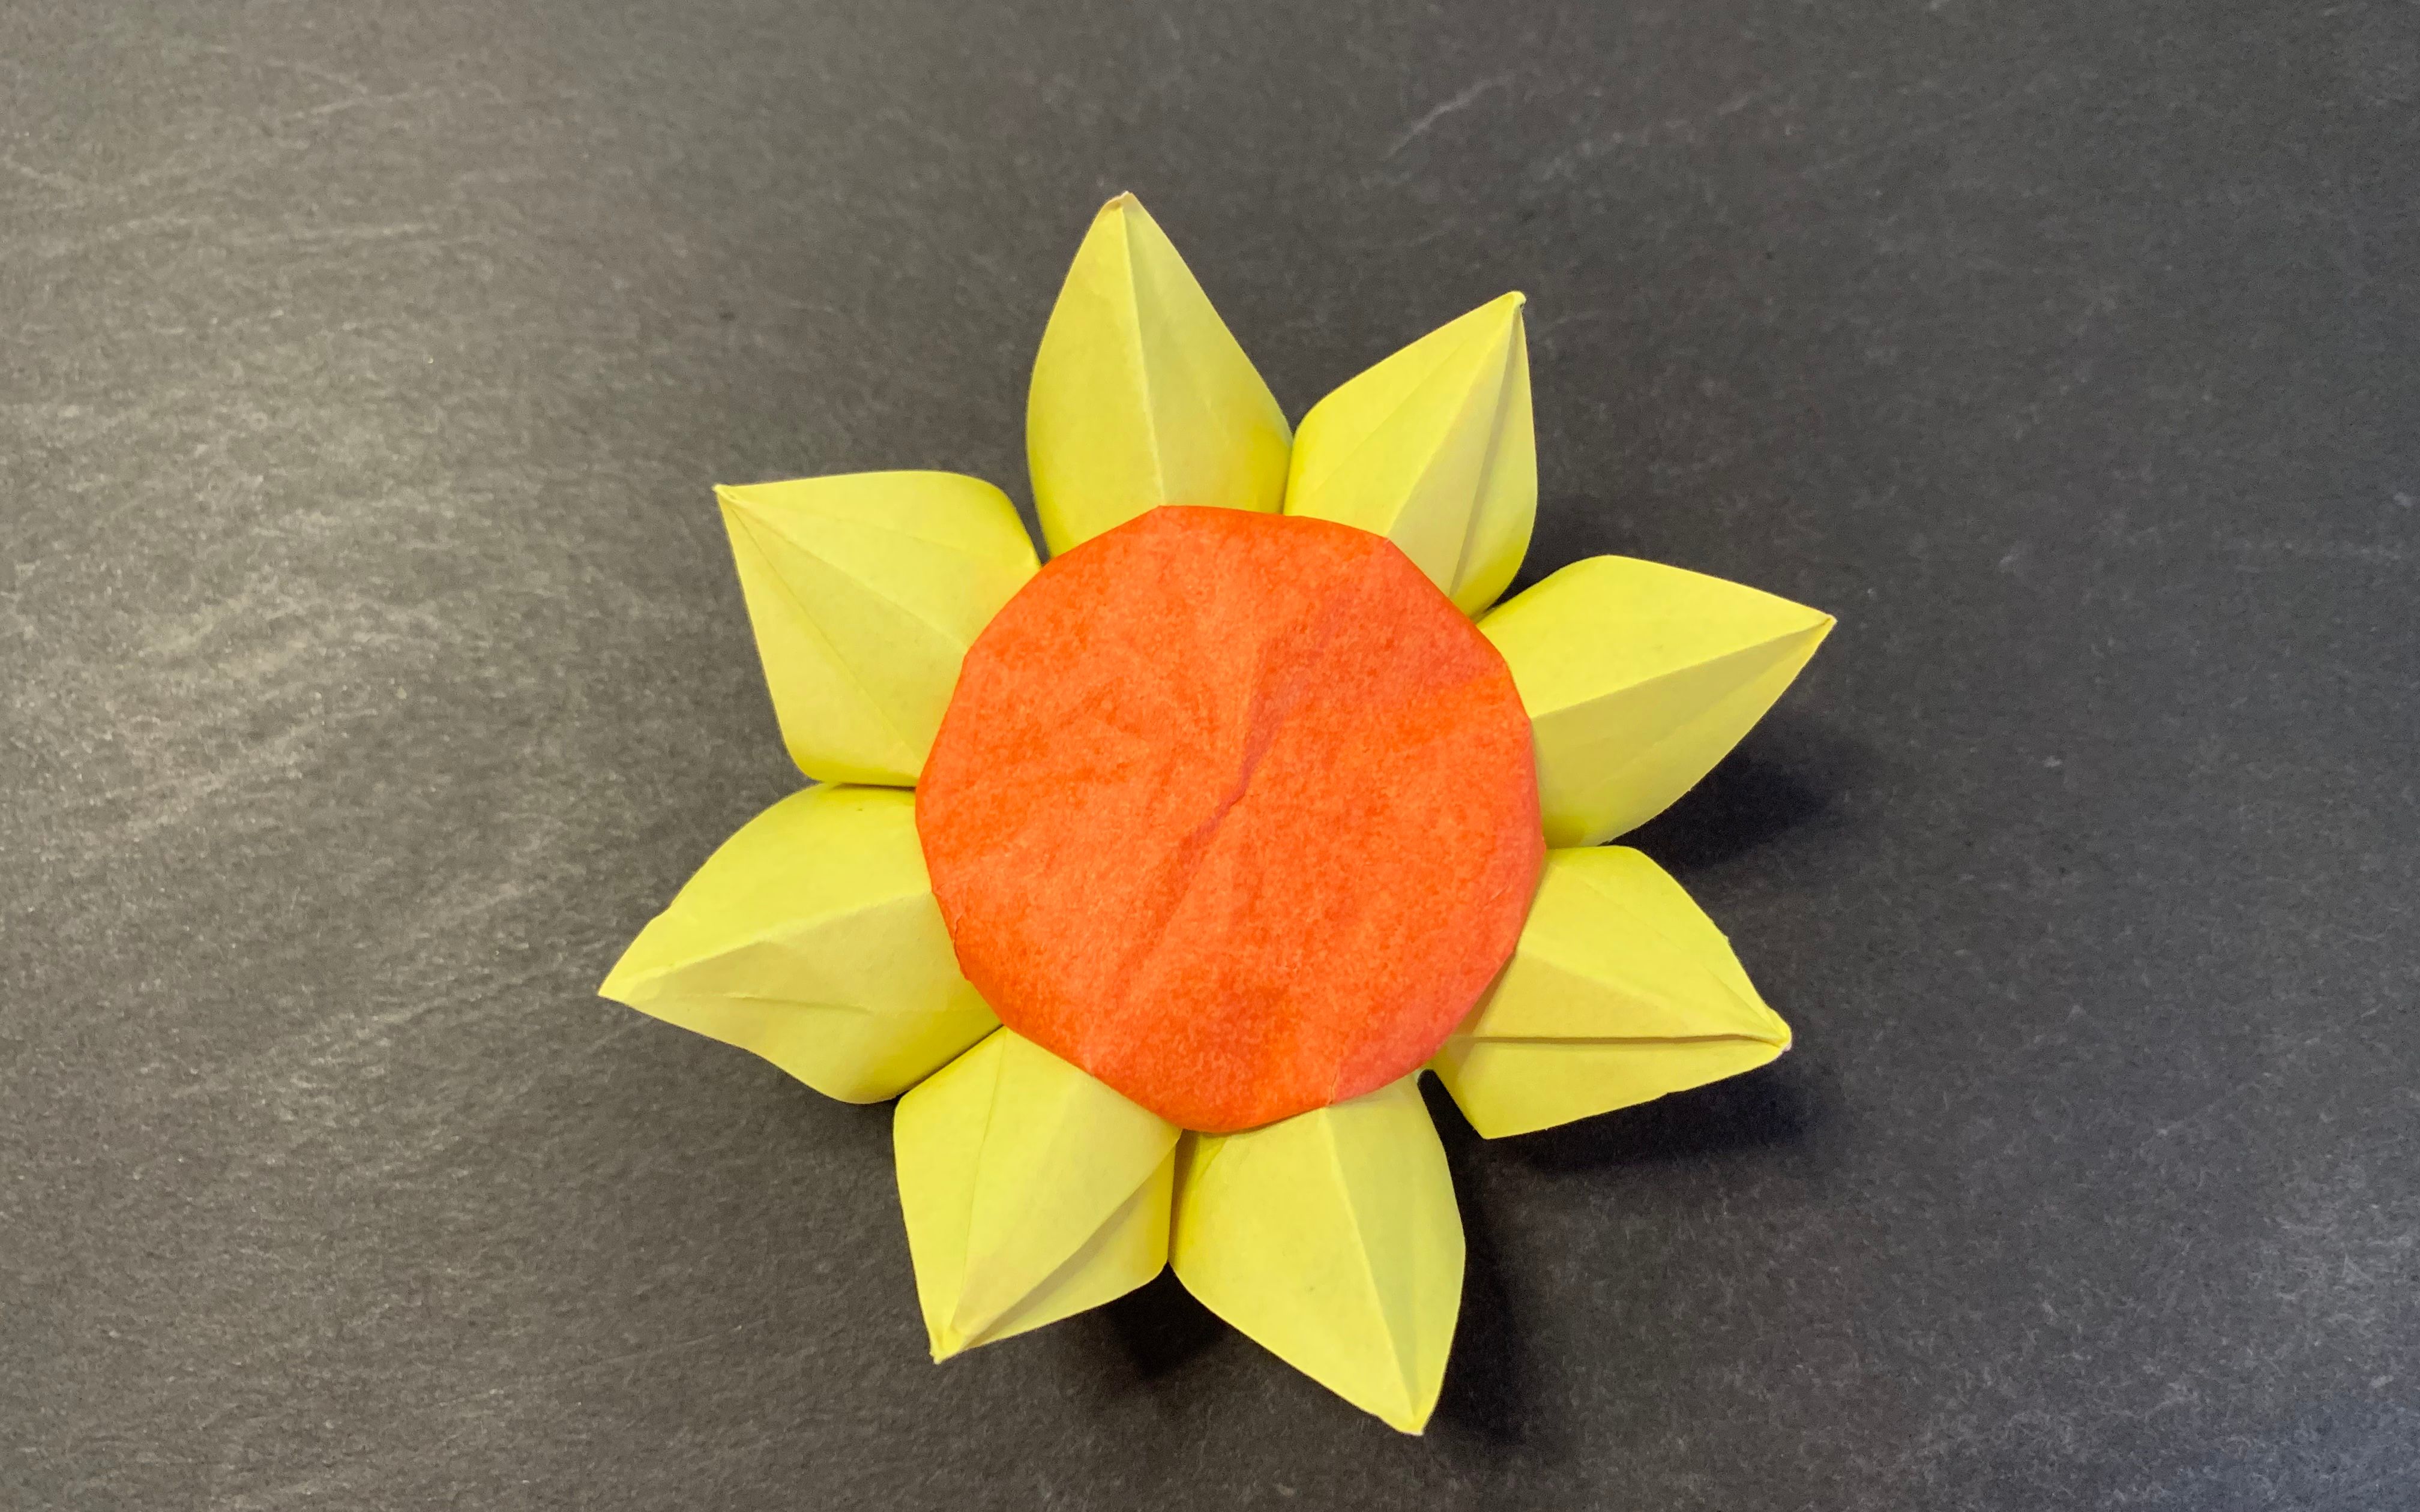 一朵非常漂亮的太阳花,也就是向日葵折纸教程,很简单哦!